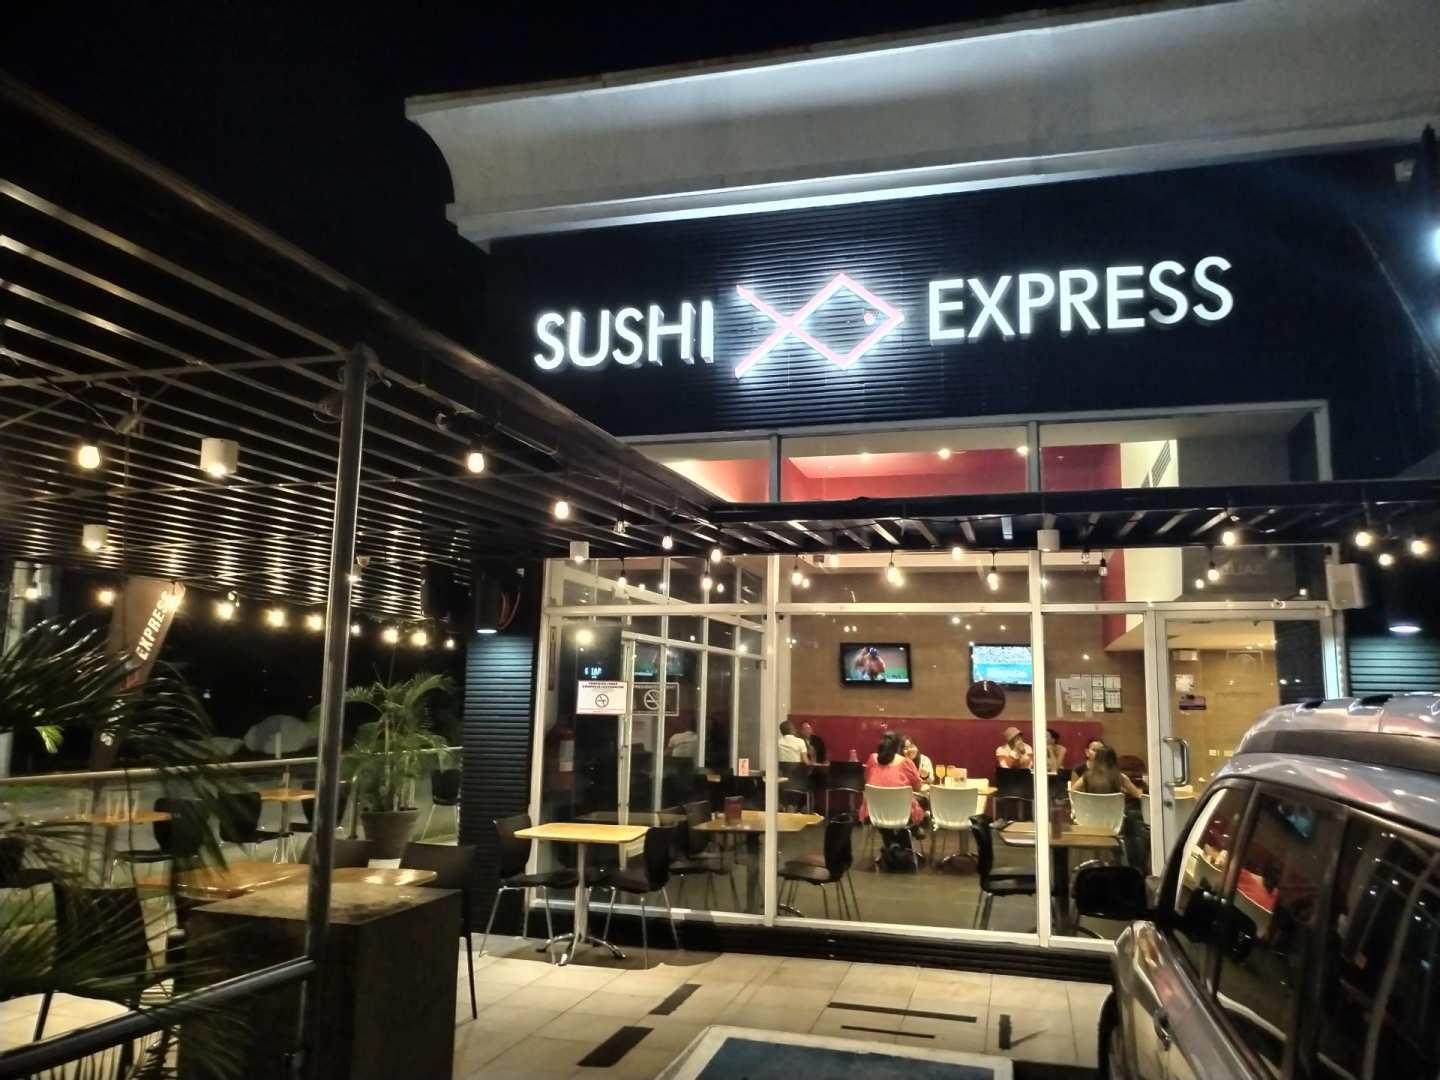 Sushi Express (Condado del Rey)